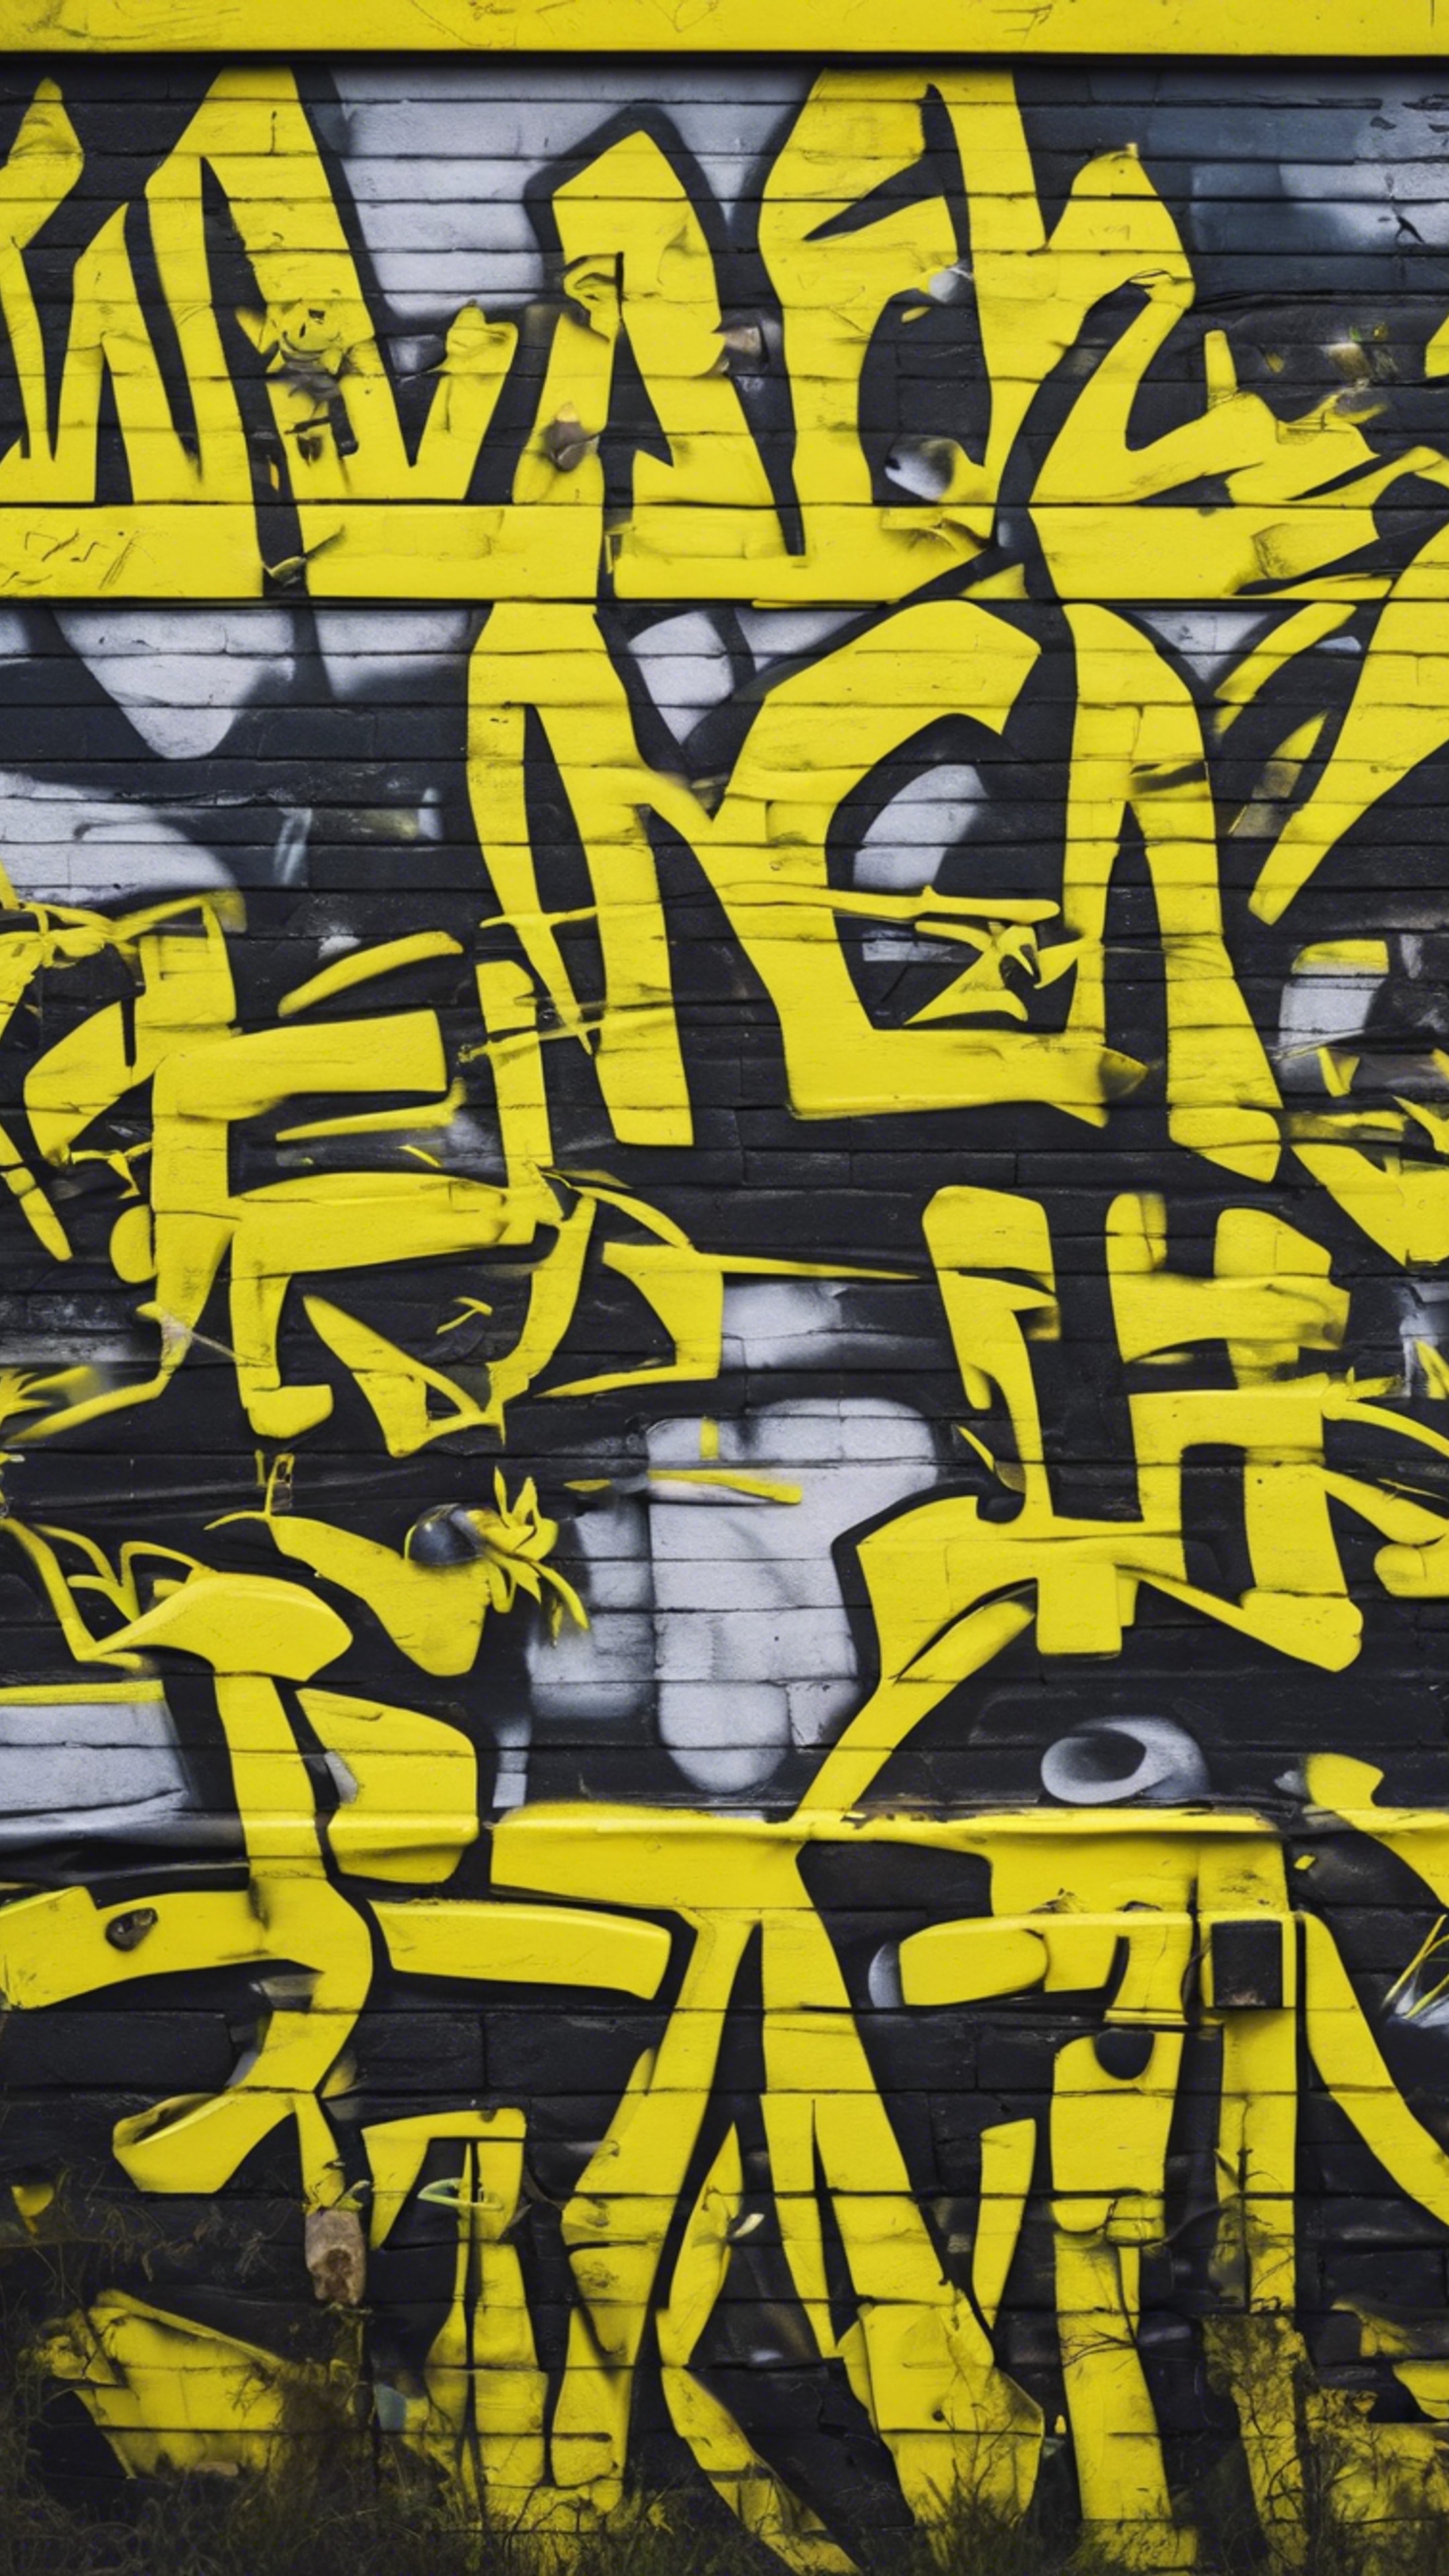 An urban graffiti wall consisting of wild neon yellow graphics.壁紙[c33d158e57ea4e1b8c8e]